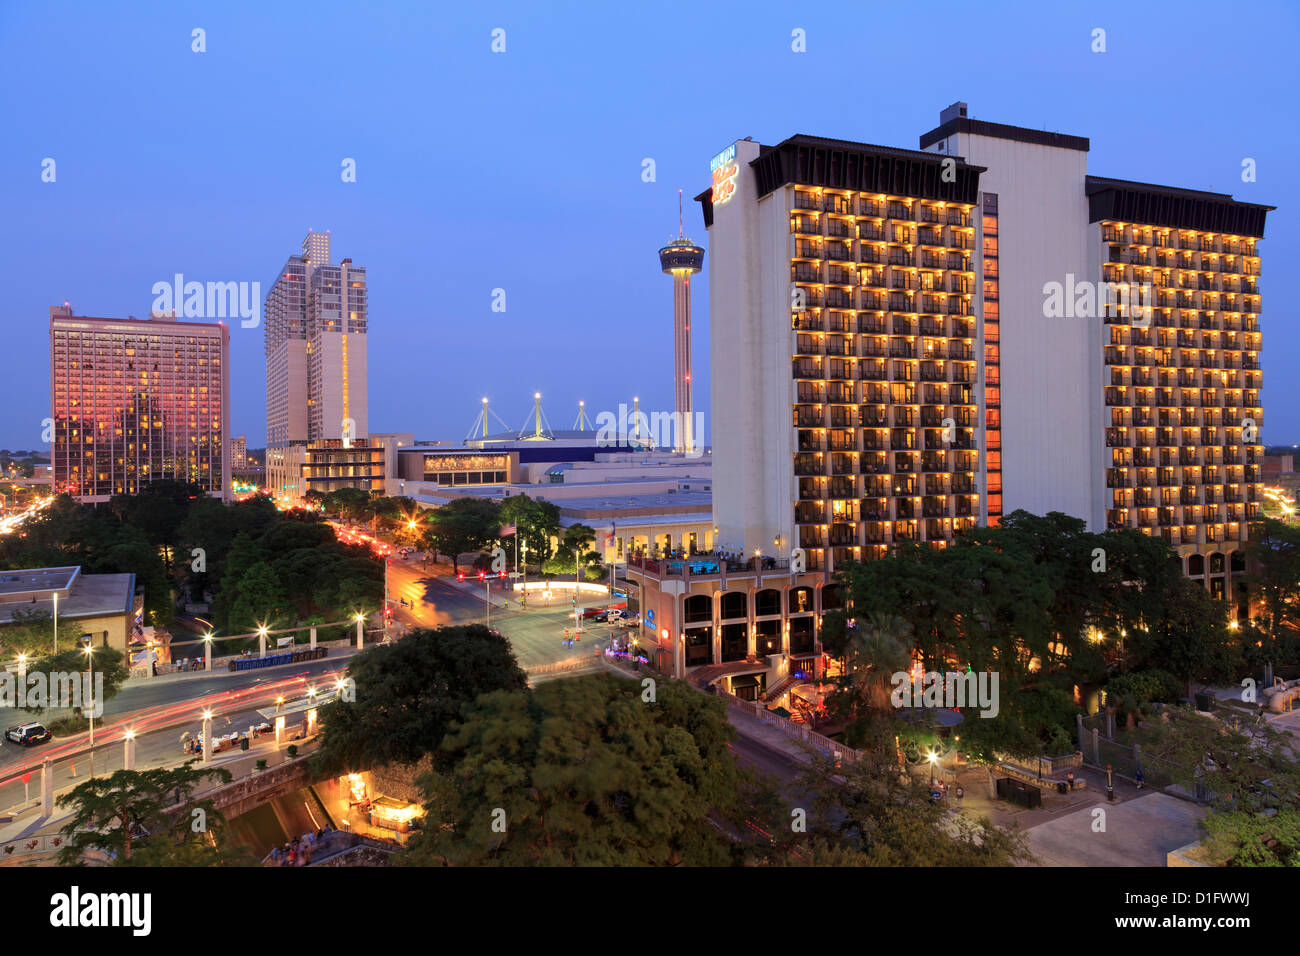 Die Skyline der Innenstadt, San Antonio, Texas, Vereinigte Staaten von Amerika, Nordamerika Stockfoto